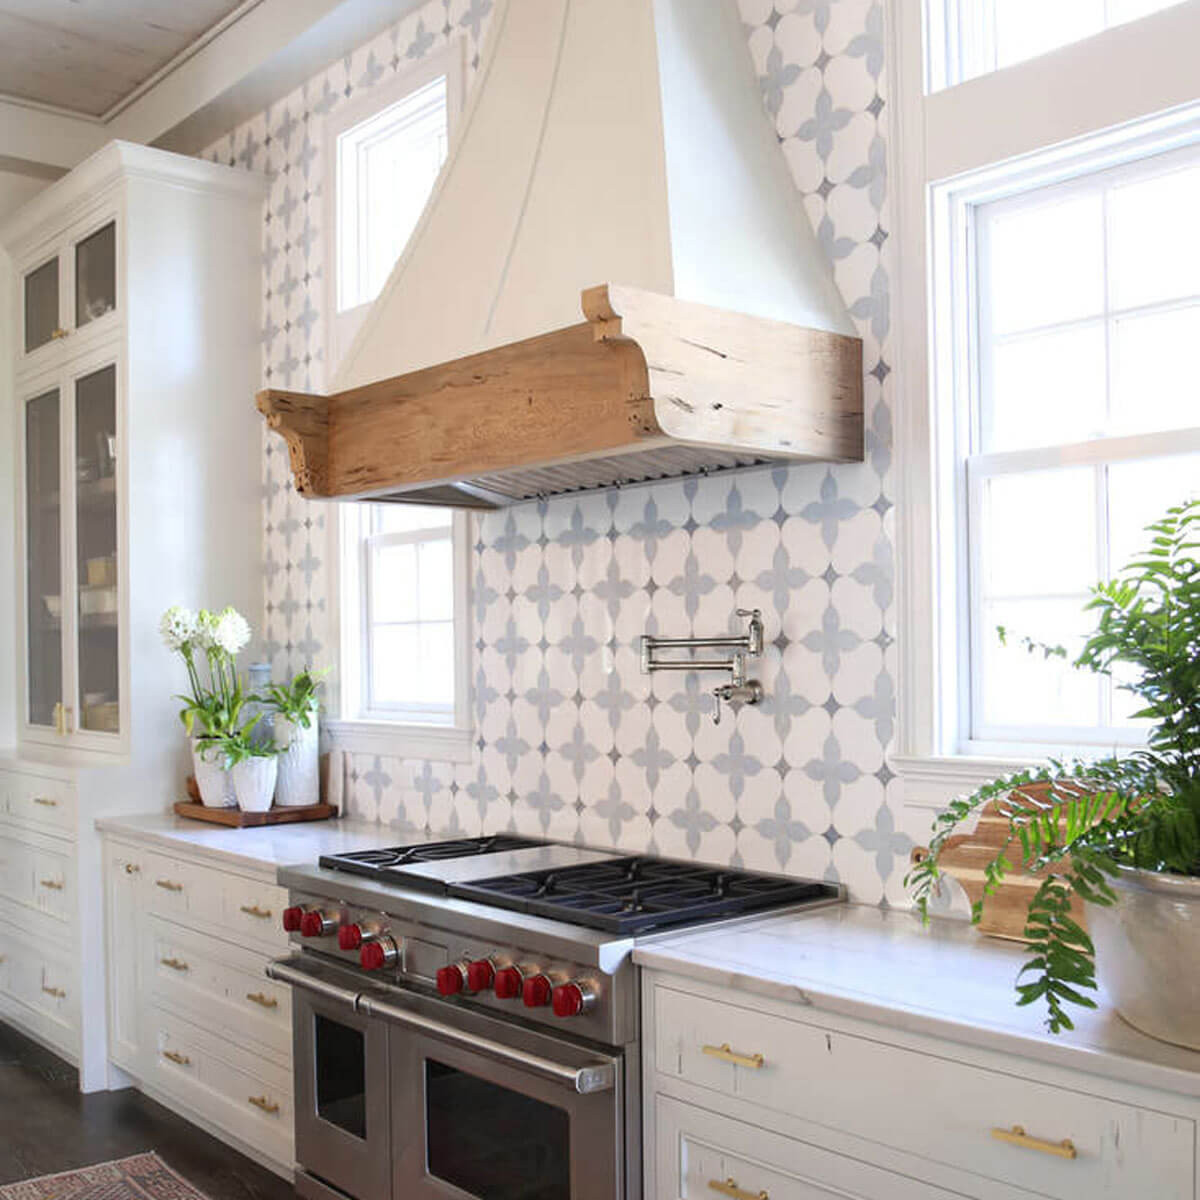 Kitchen Backsplash Tile Ideas
 14 Showstopping Tile Backsplash Ideas To Suit Any Style